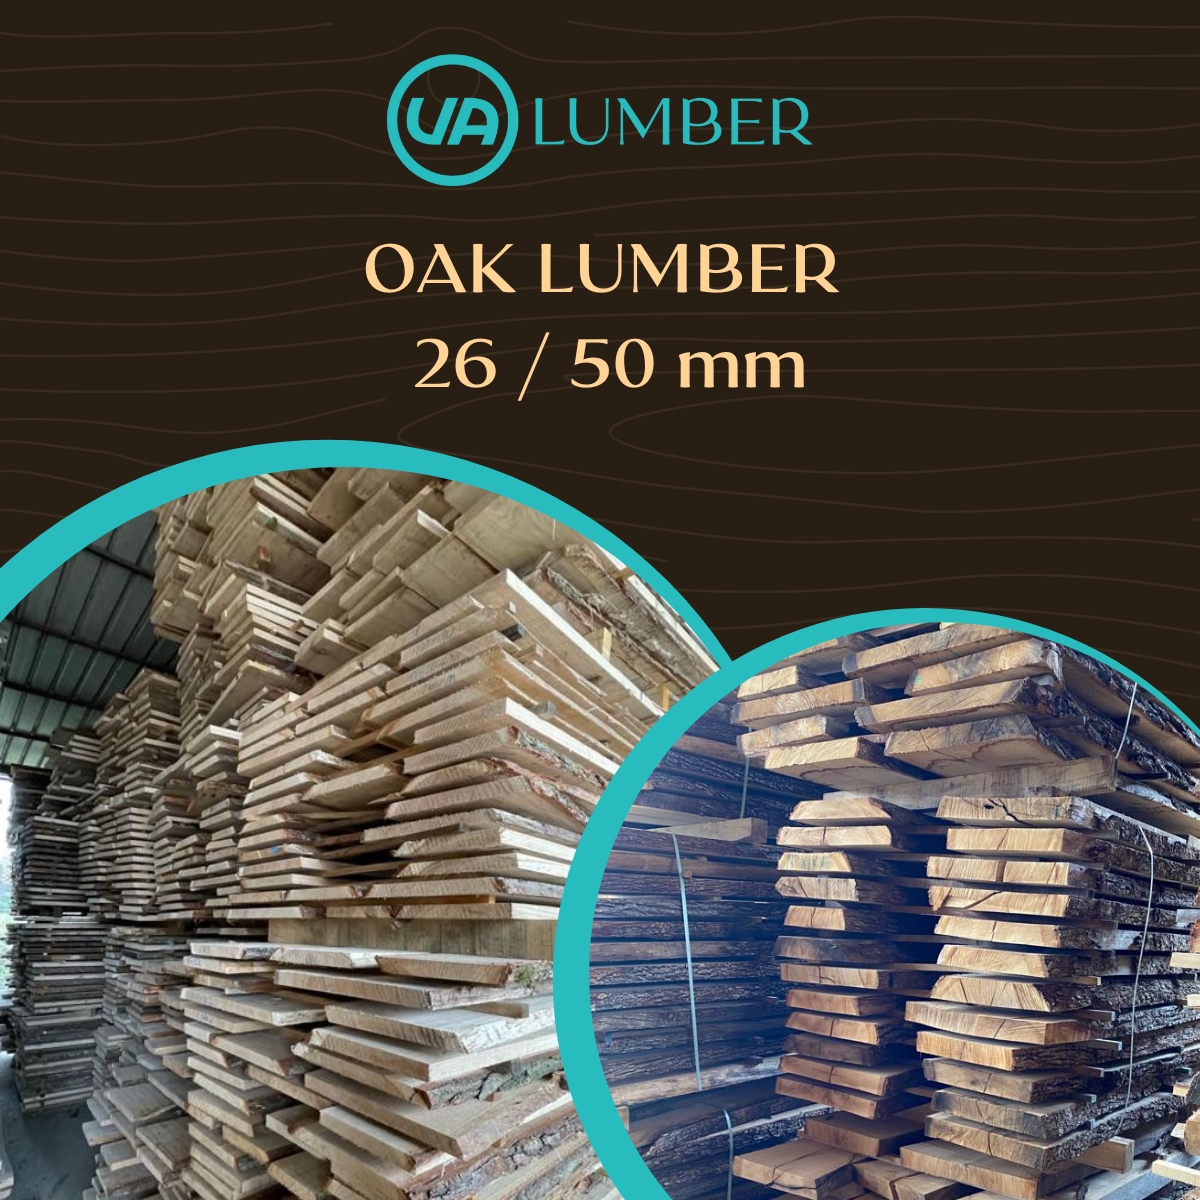 Oak lumber offer